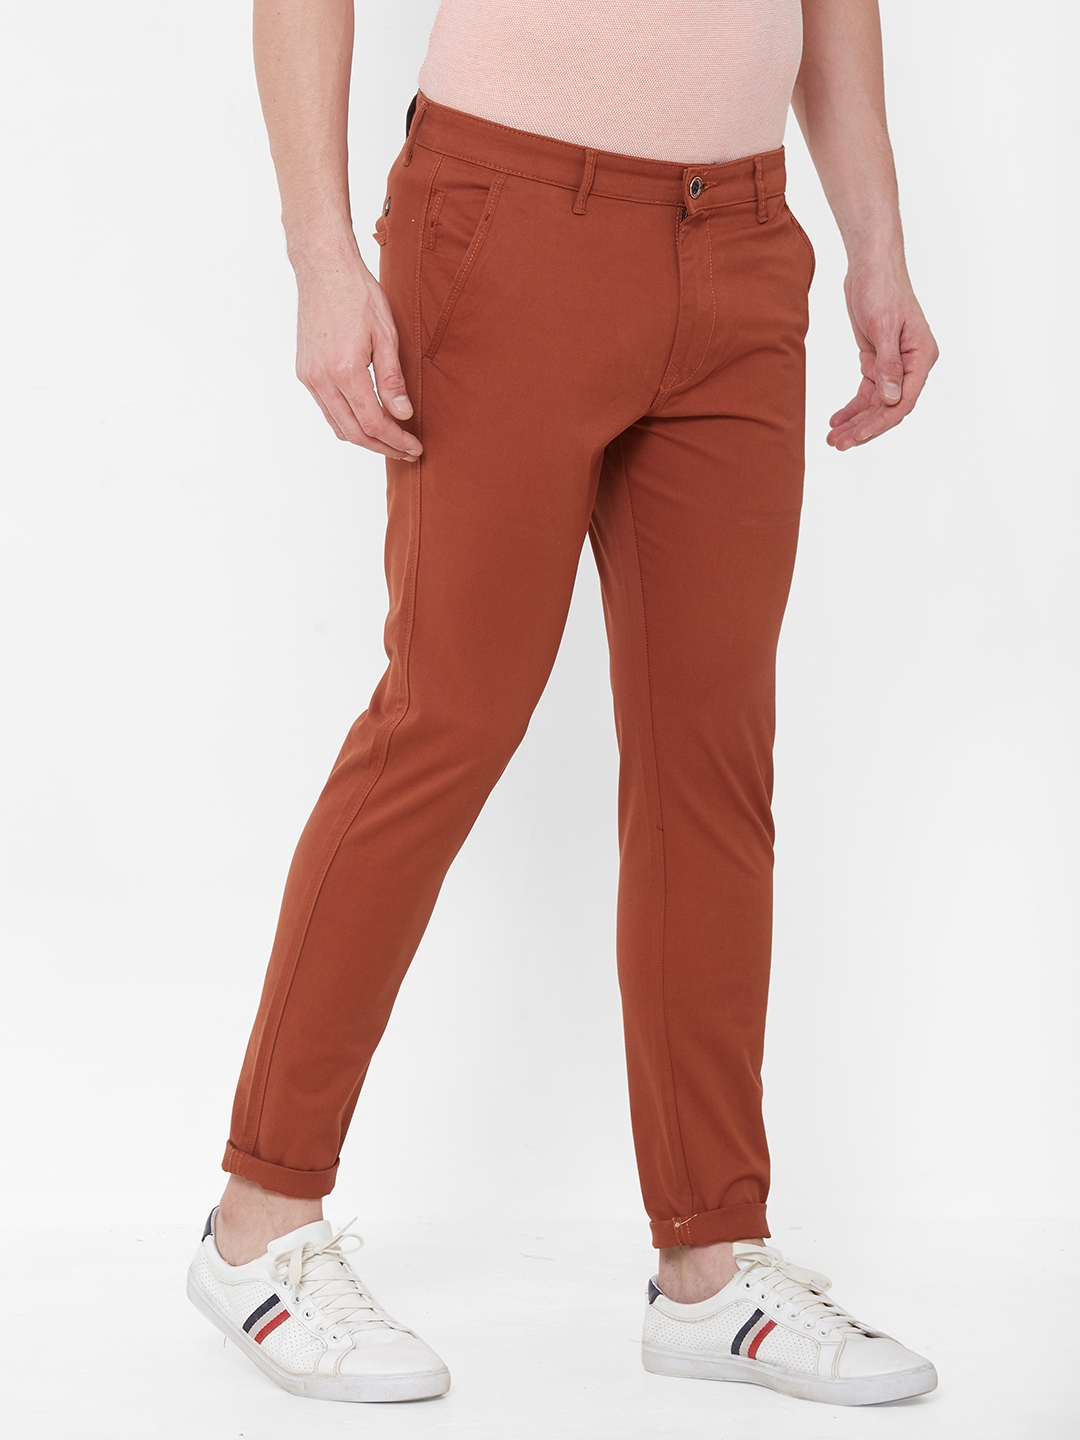 Livewire | Livewire Men's Cotton Lycra Rust Slim Fit Solid Trouser 3